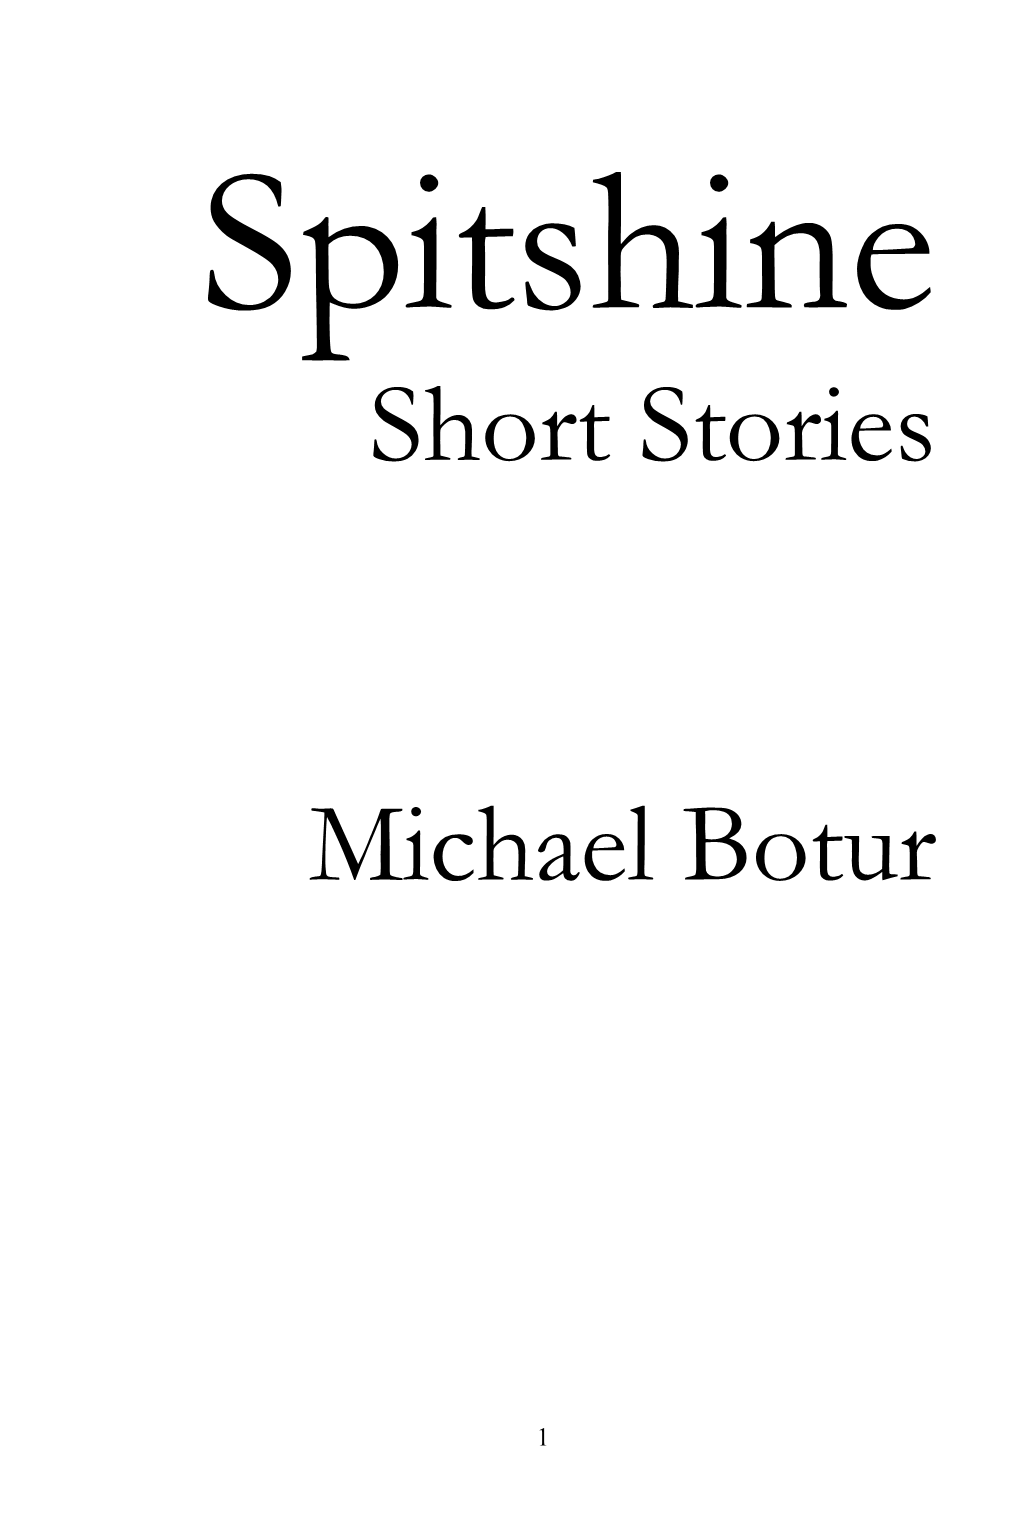 Short Stories Michael Botur